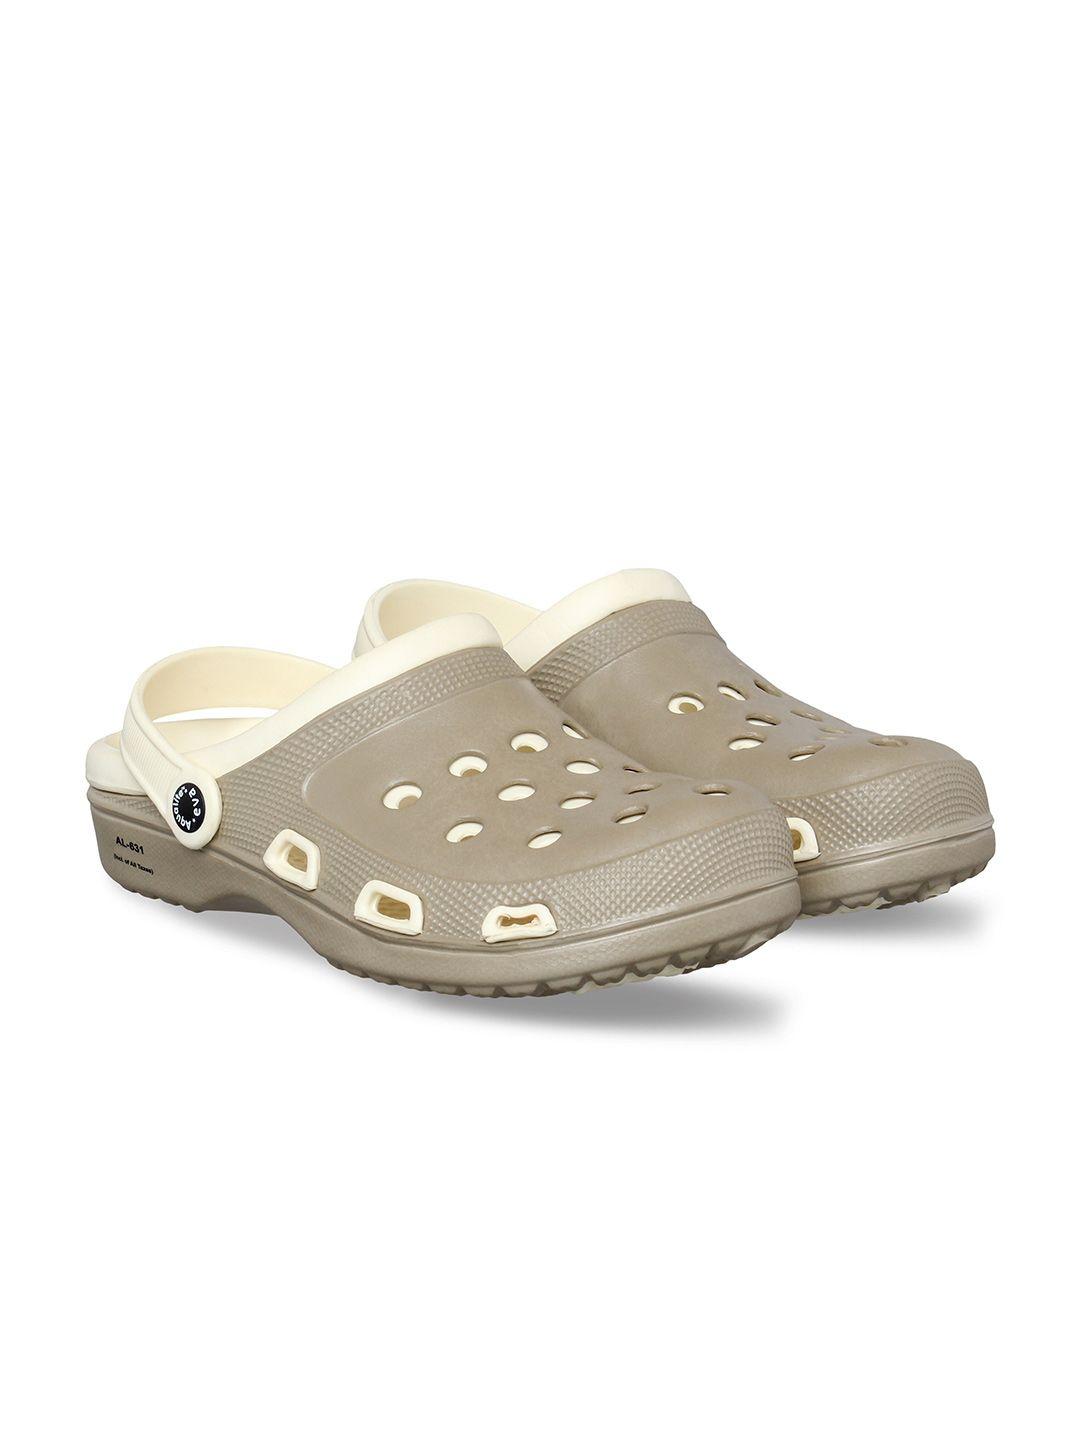 aqualite men beige & cream-coloured clogs sandals